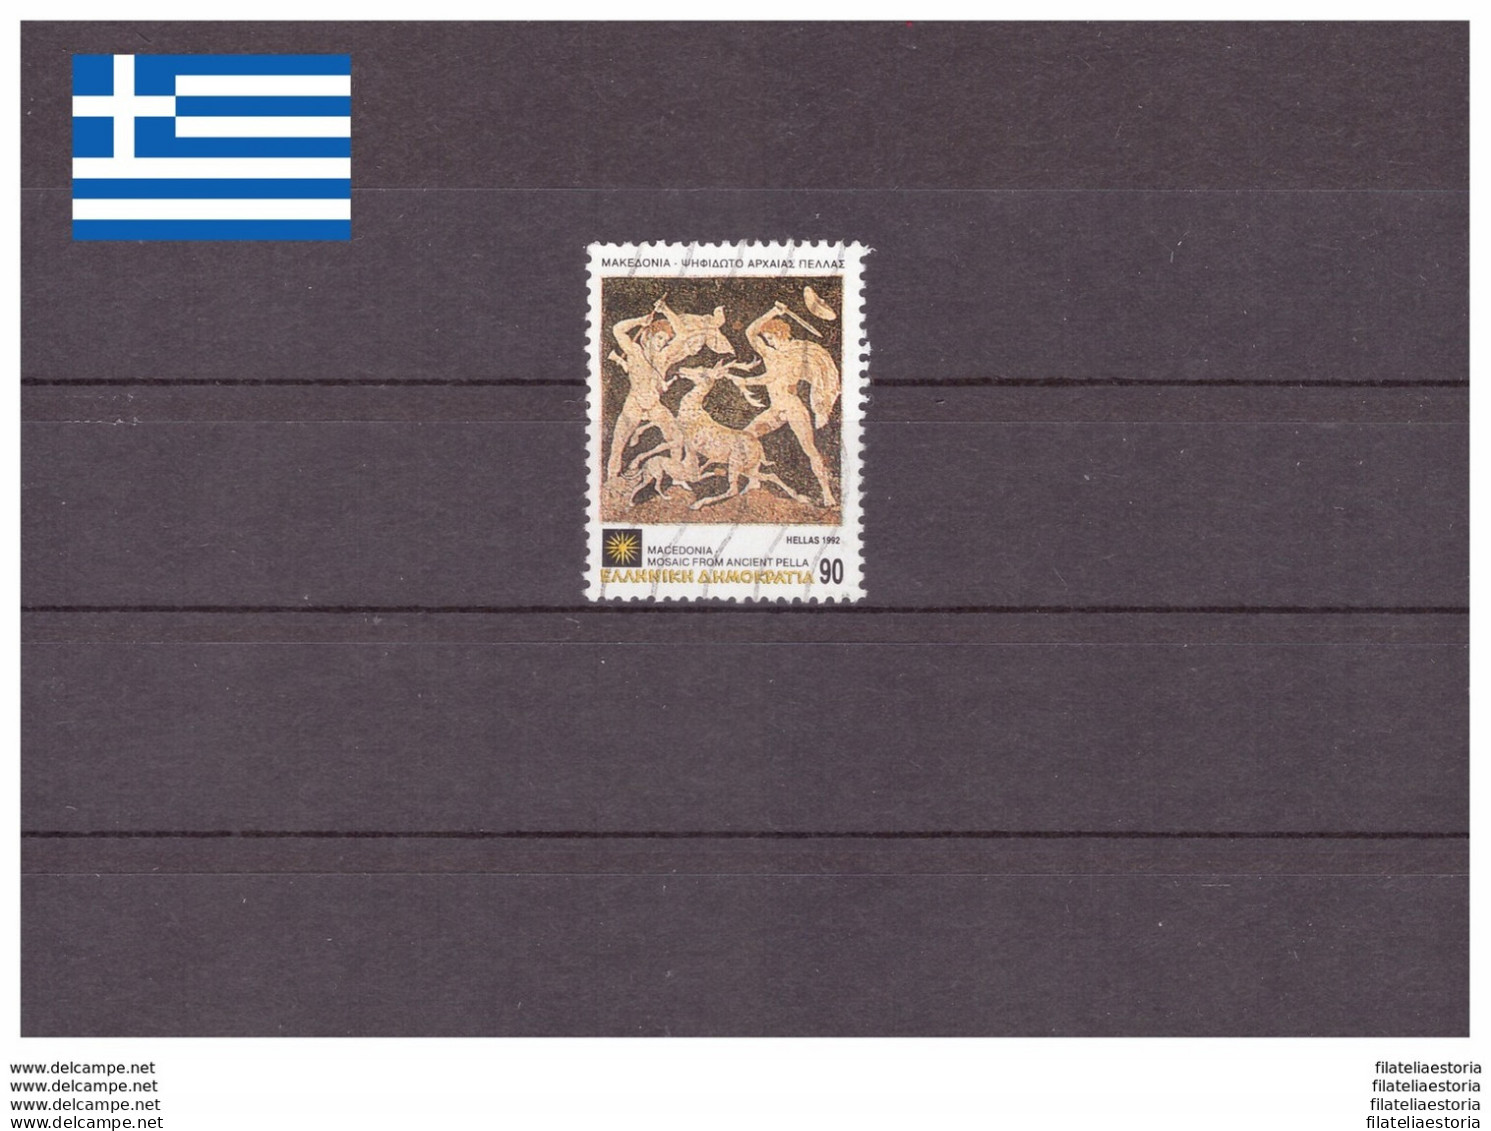 Grèce 1992 - Oblitéré - Art - Michel Nr. 1809 (gre657) - Used Stamps